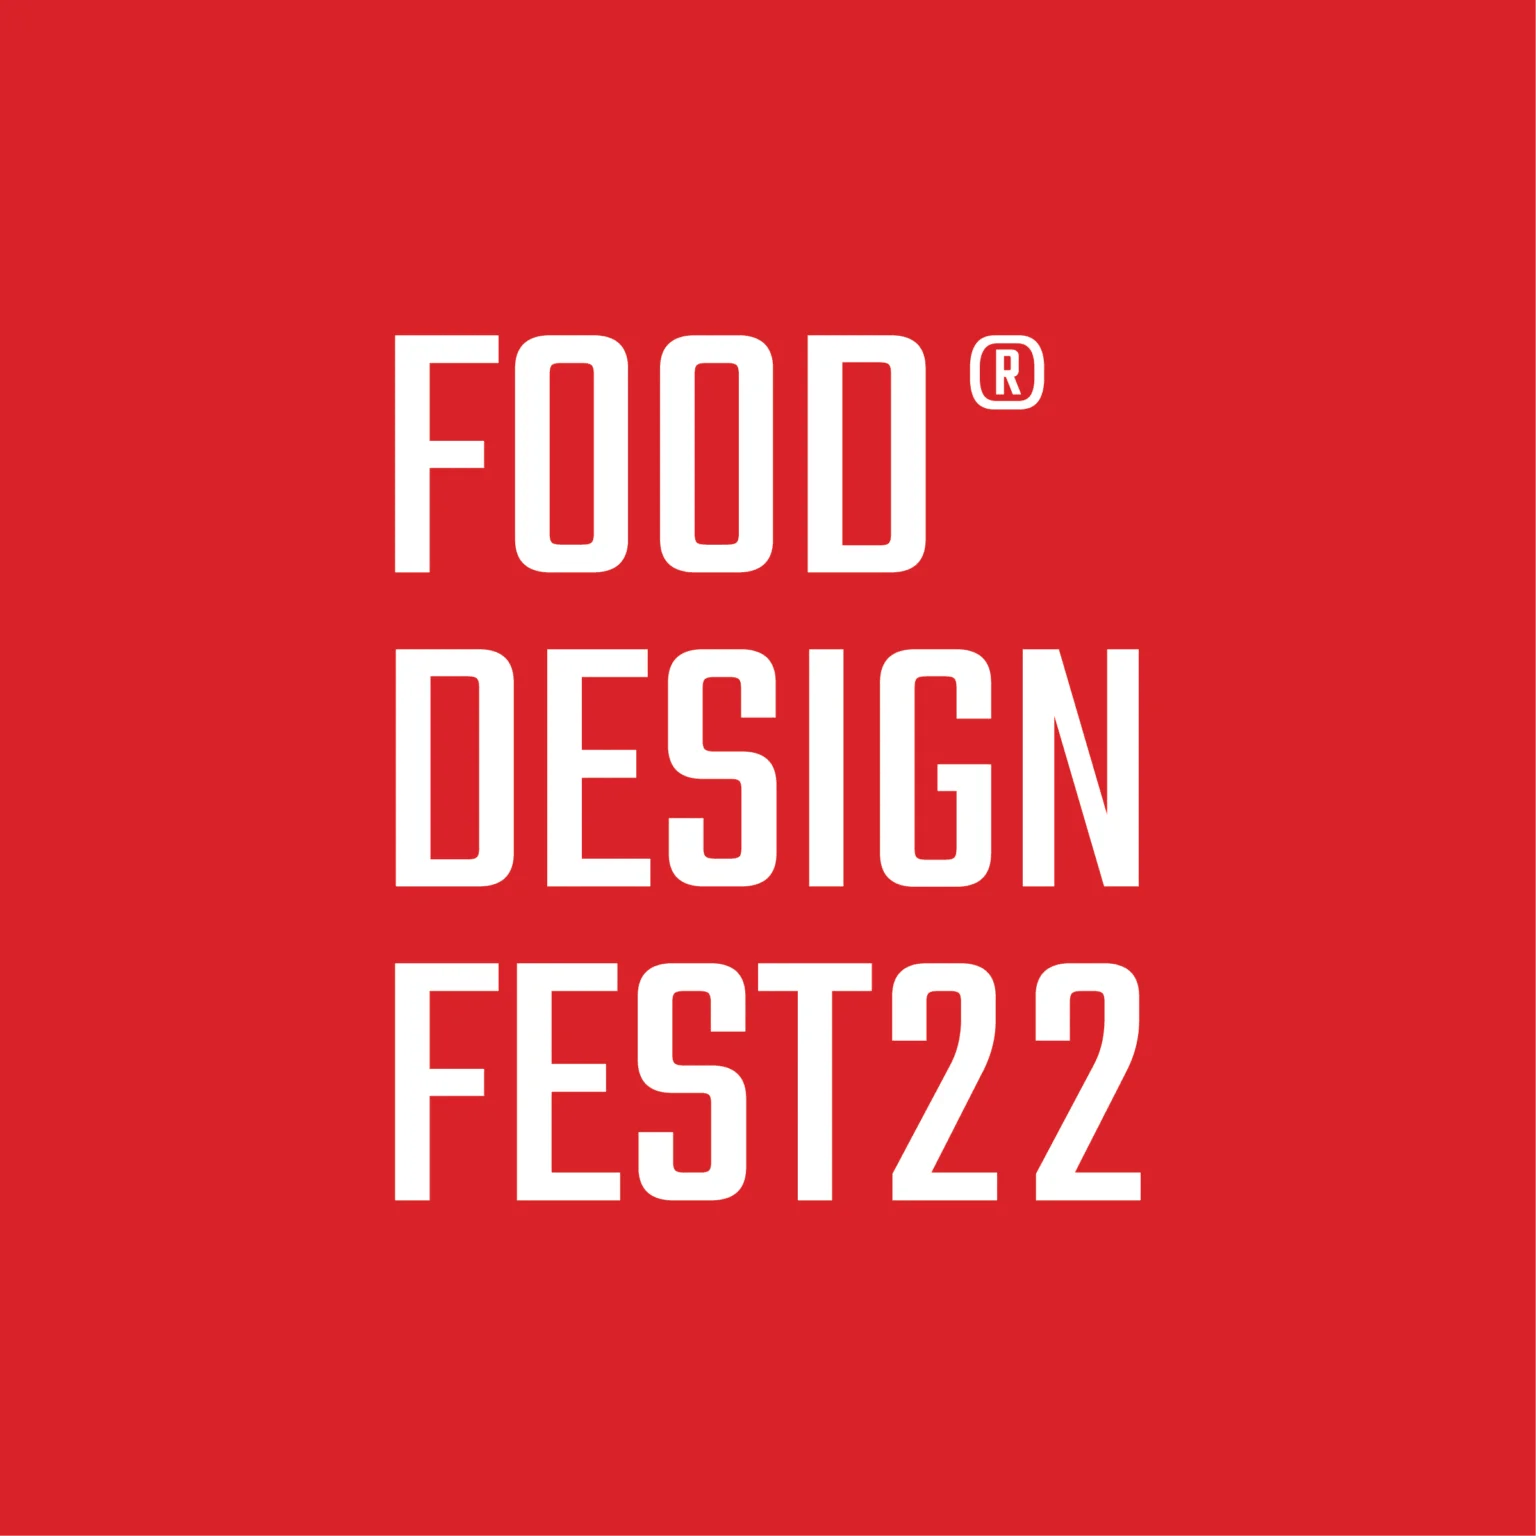 Imagen número 75 de Cosentino colabora con el Food Design Festival 2022